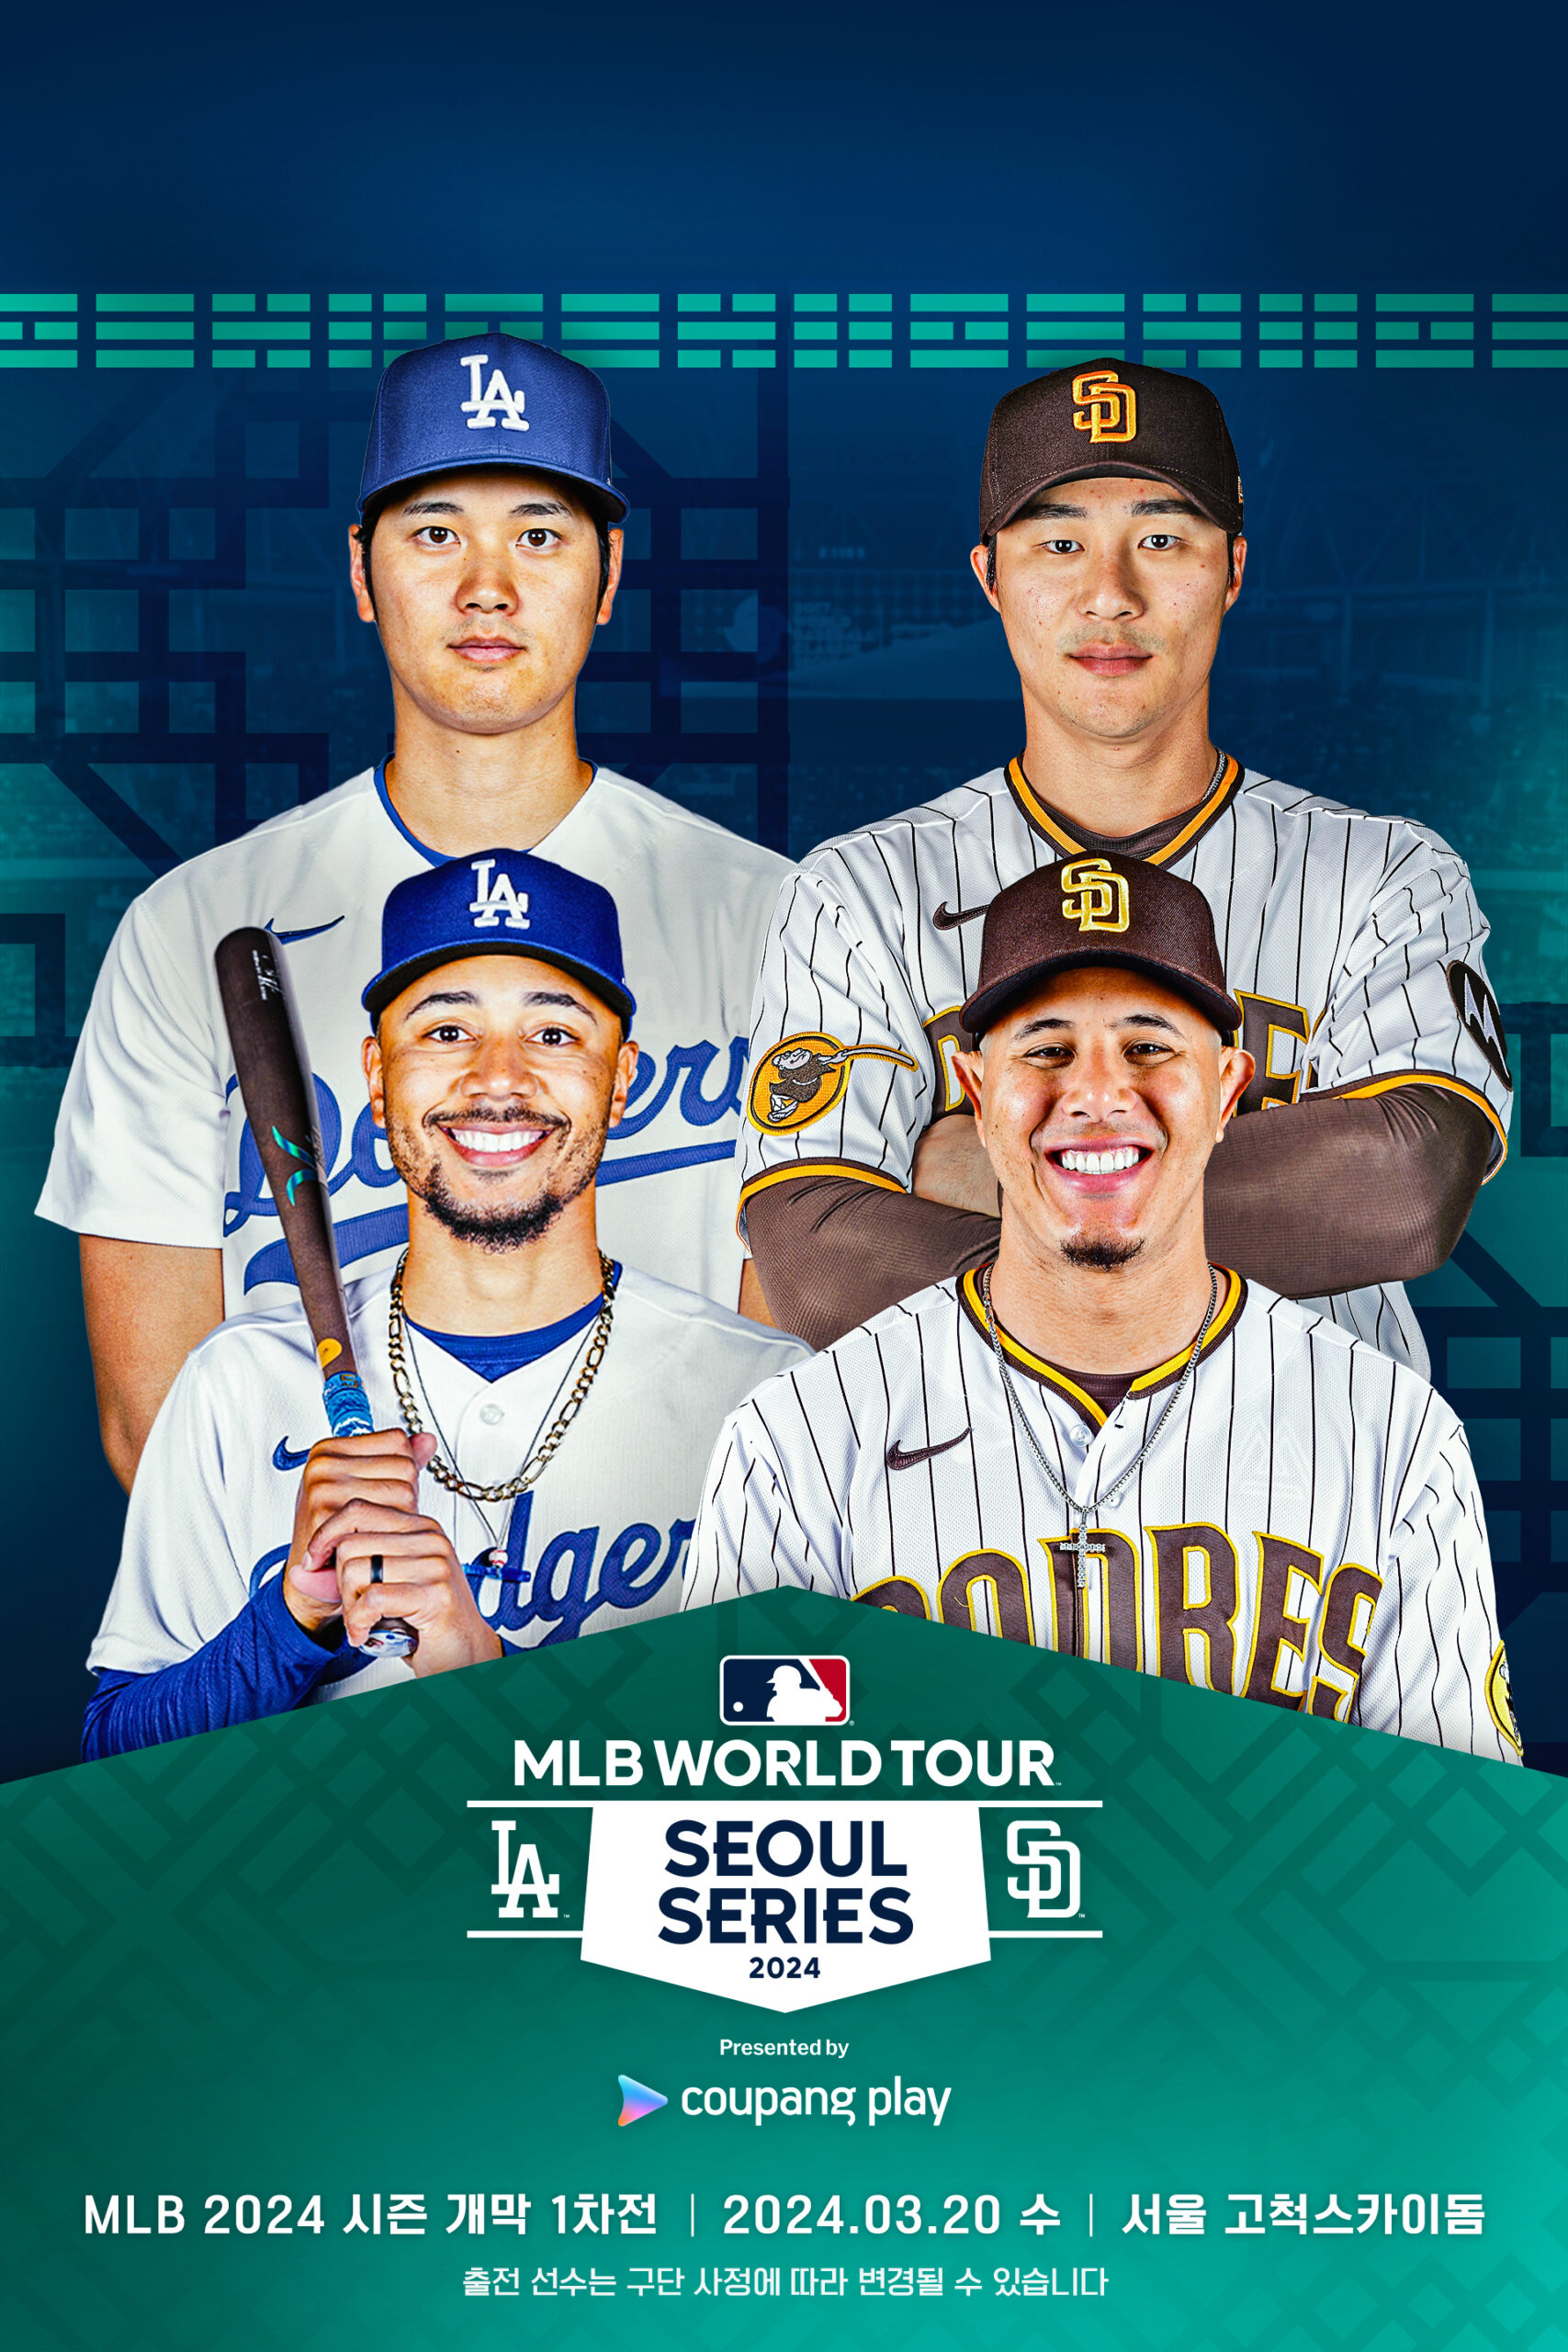 [보도자료] 쿠팡플레이, 'MLB 월드투어 서울 시리즈' 첫 티켓 오픈 8분만에 전석 매진! 쿠팡 뉴스룸